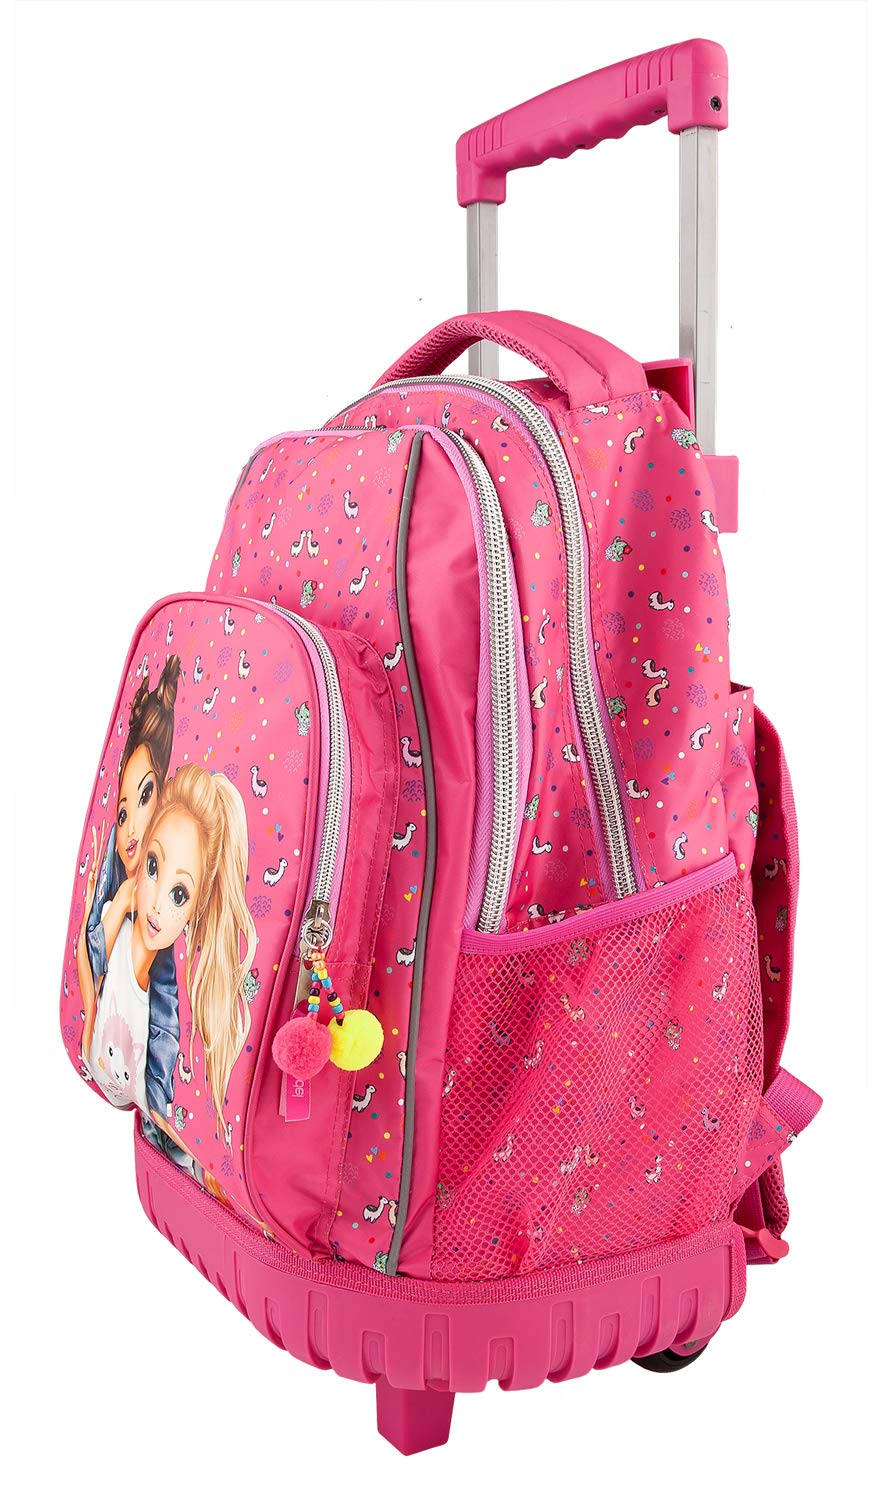 Depesche 10360 School Rucksack Trolley Top Model Pink